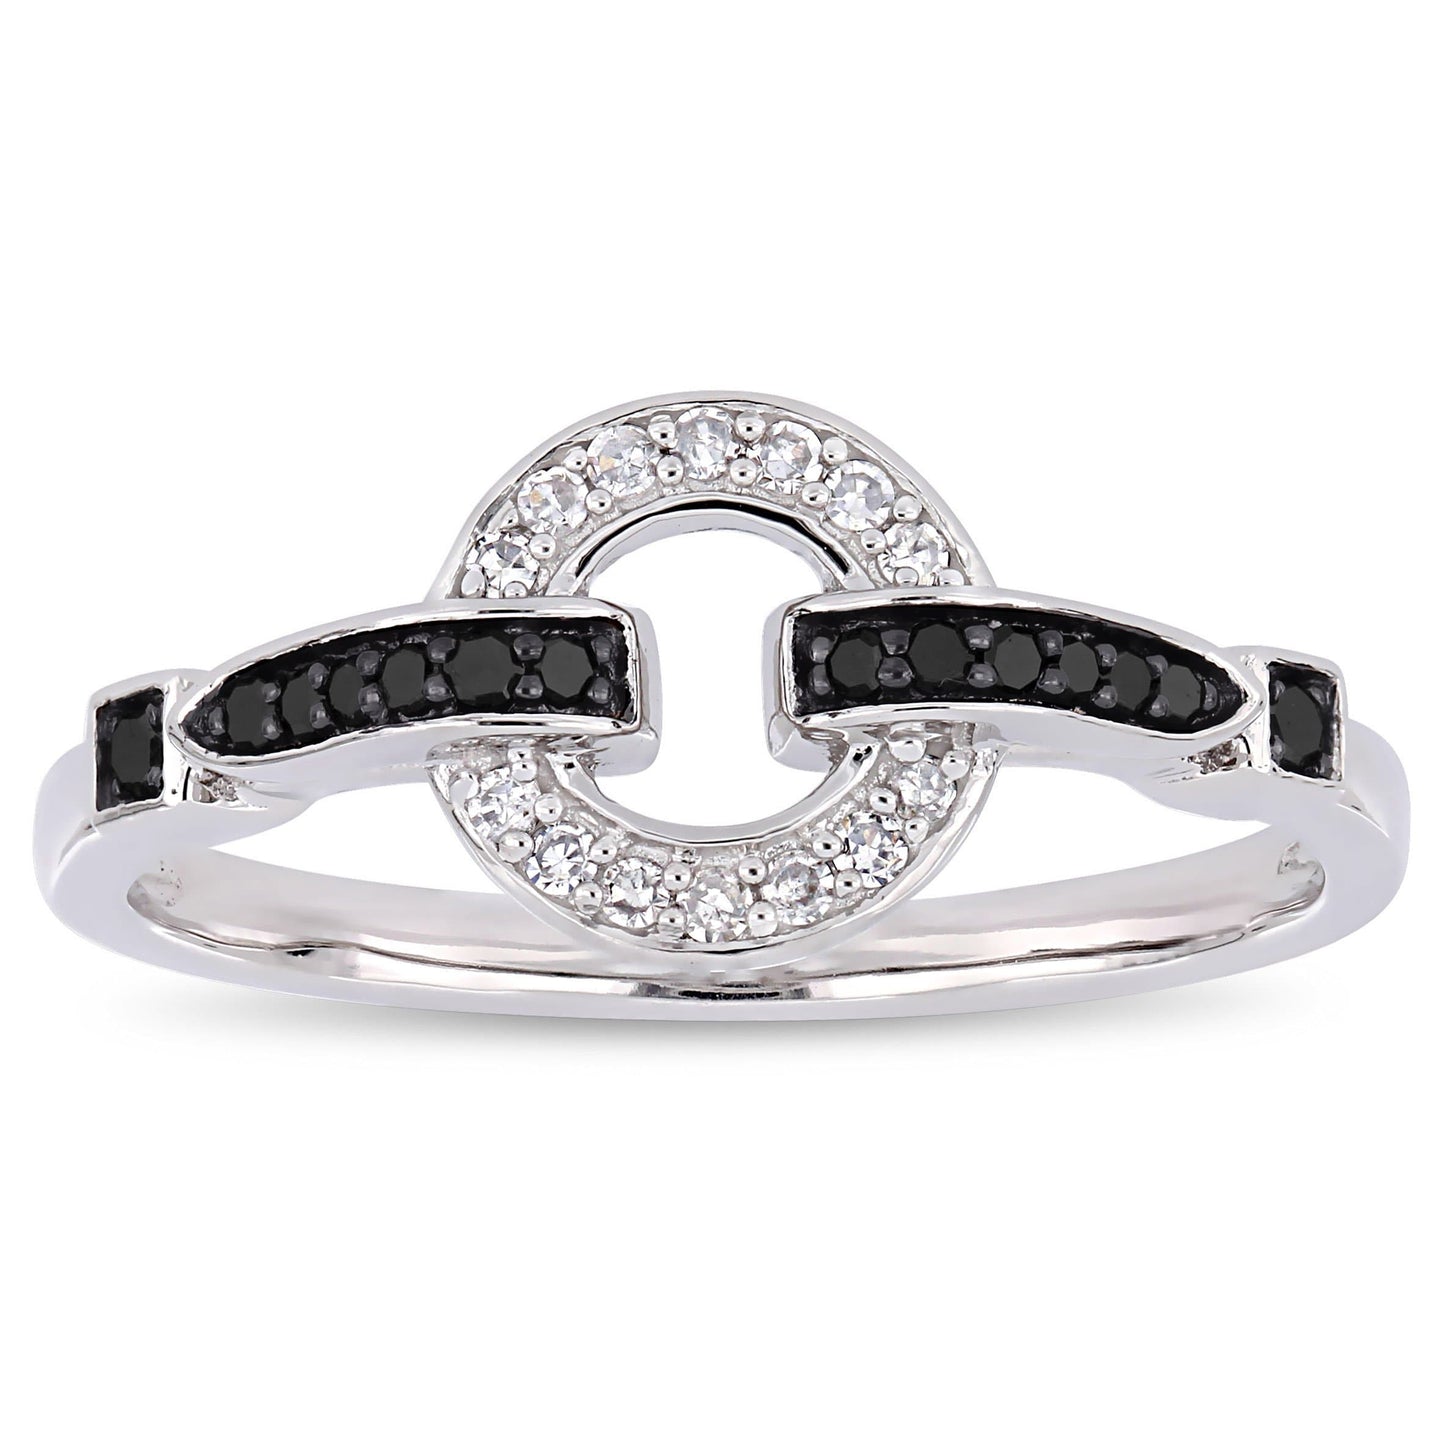 Julie Leah Black & White Diamond Knot Ring in 10k White Gold